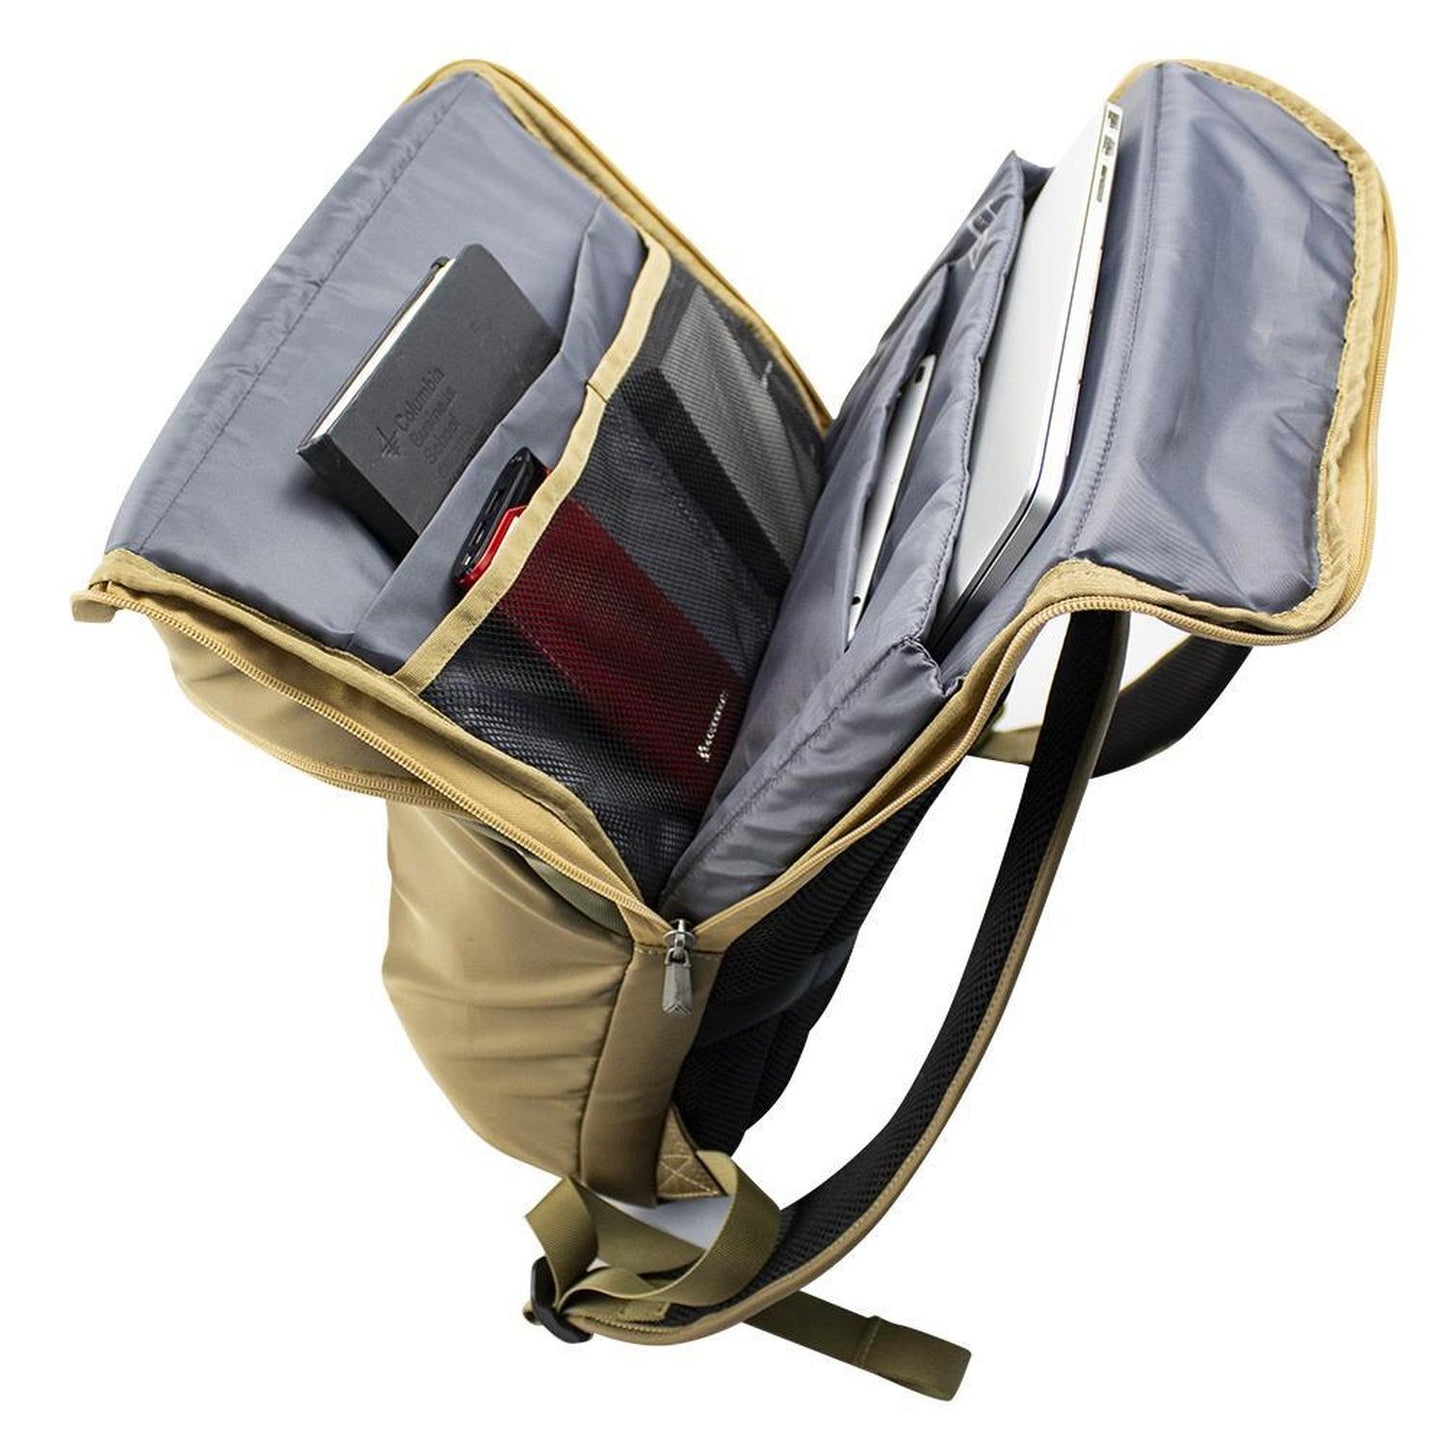 Mochila backpack Skypeak para ordenadores de 15,6" hasta 17” tamaño Grande YORI-117BR.